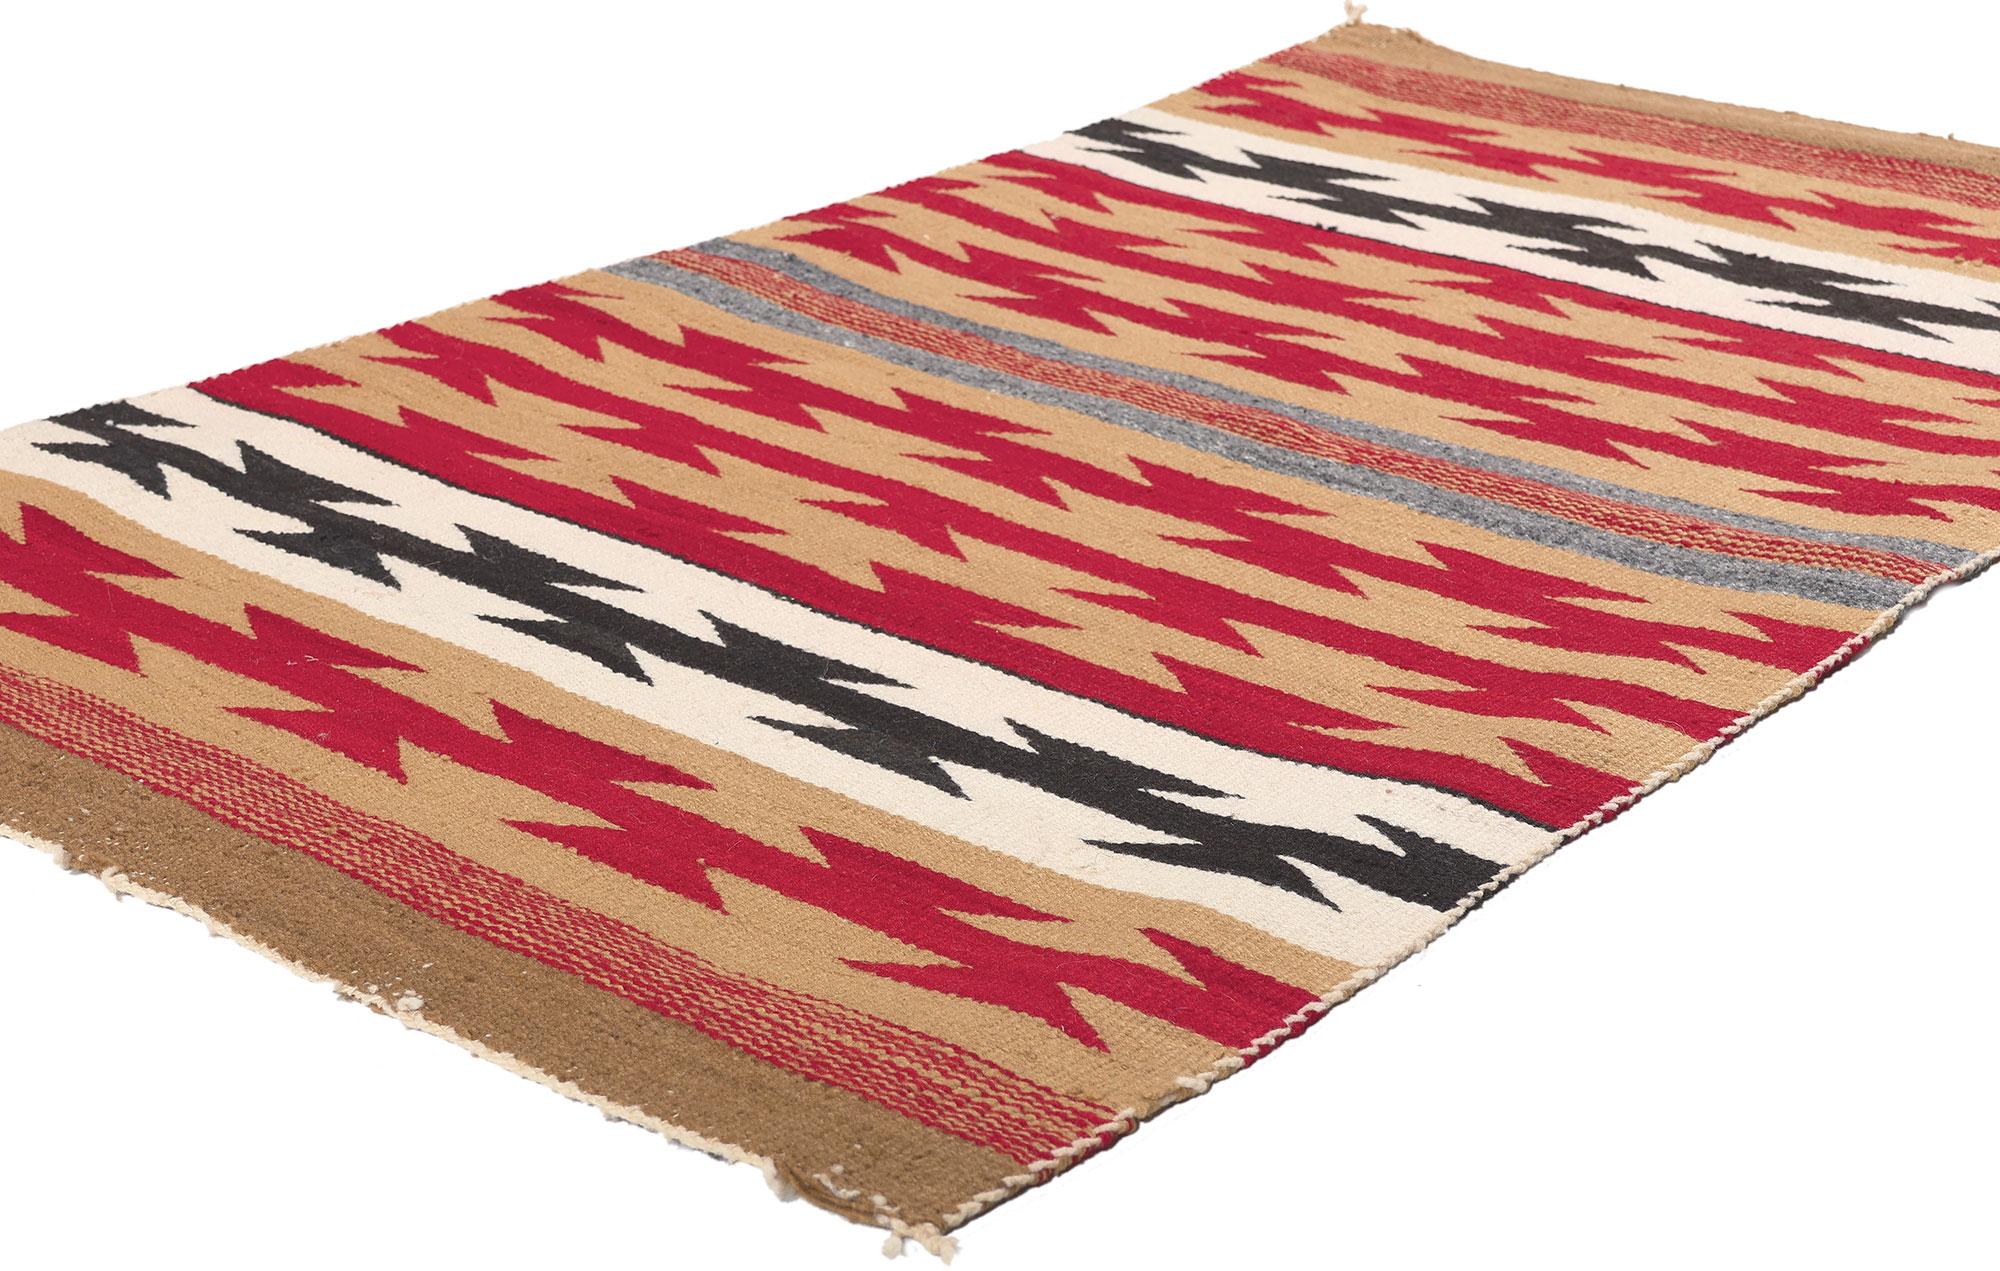 78558 Antiker Chinle Navajo-Teppich, 02'09 x 04'06.
Dieser handgewebte Chinle Navajo-Teppich im Stil der amerikanischen Ureinwohner besticht durch seine unglaubliche Detailtreue und Textur. Das auffällige geometrische Muster und die erdige